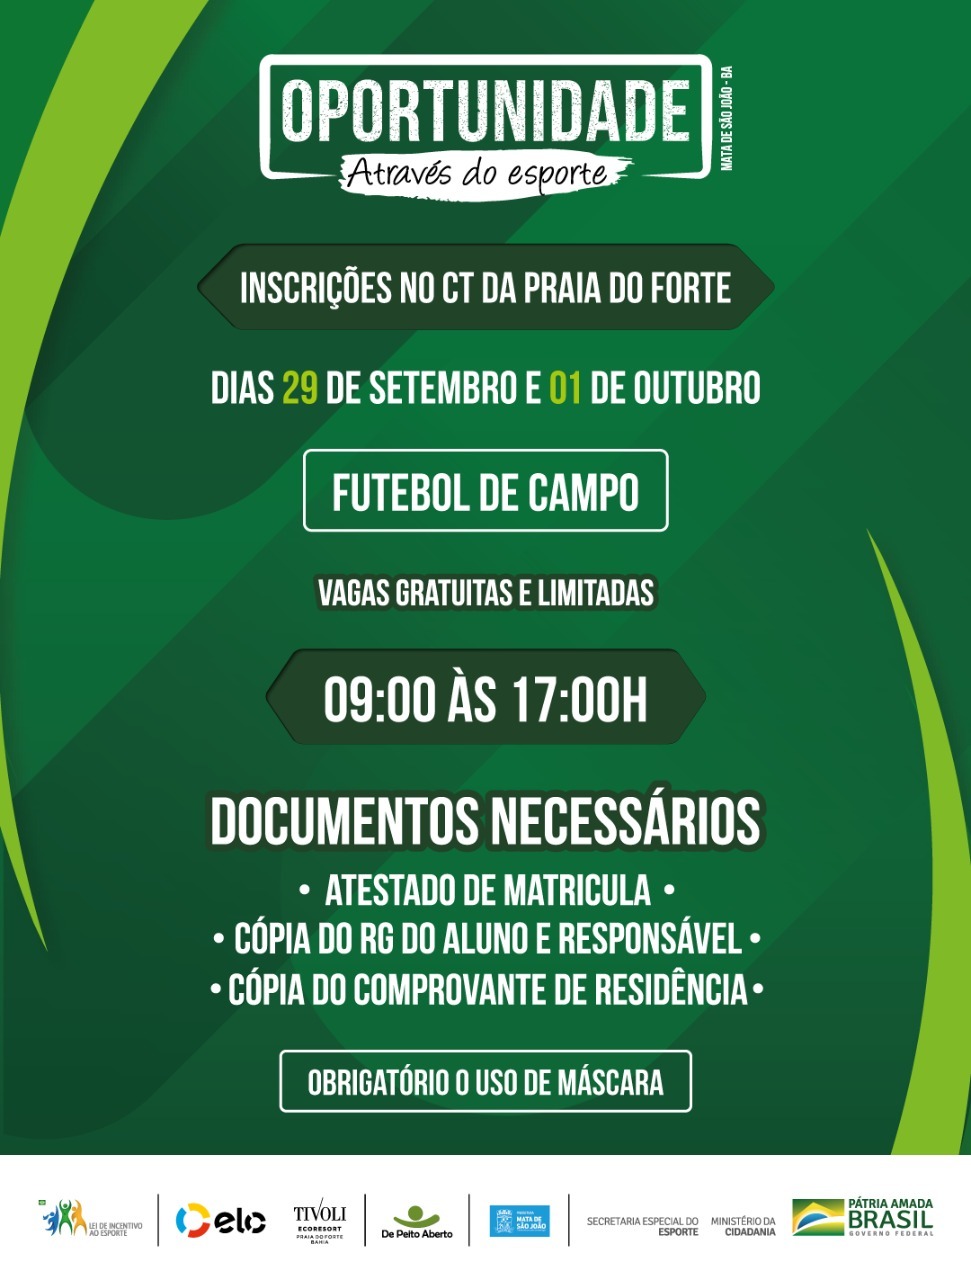  Projeto Oportunidade Através do Esporte abre vagas para aulas gratuitas de futebol de campo em Mata de São João